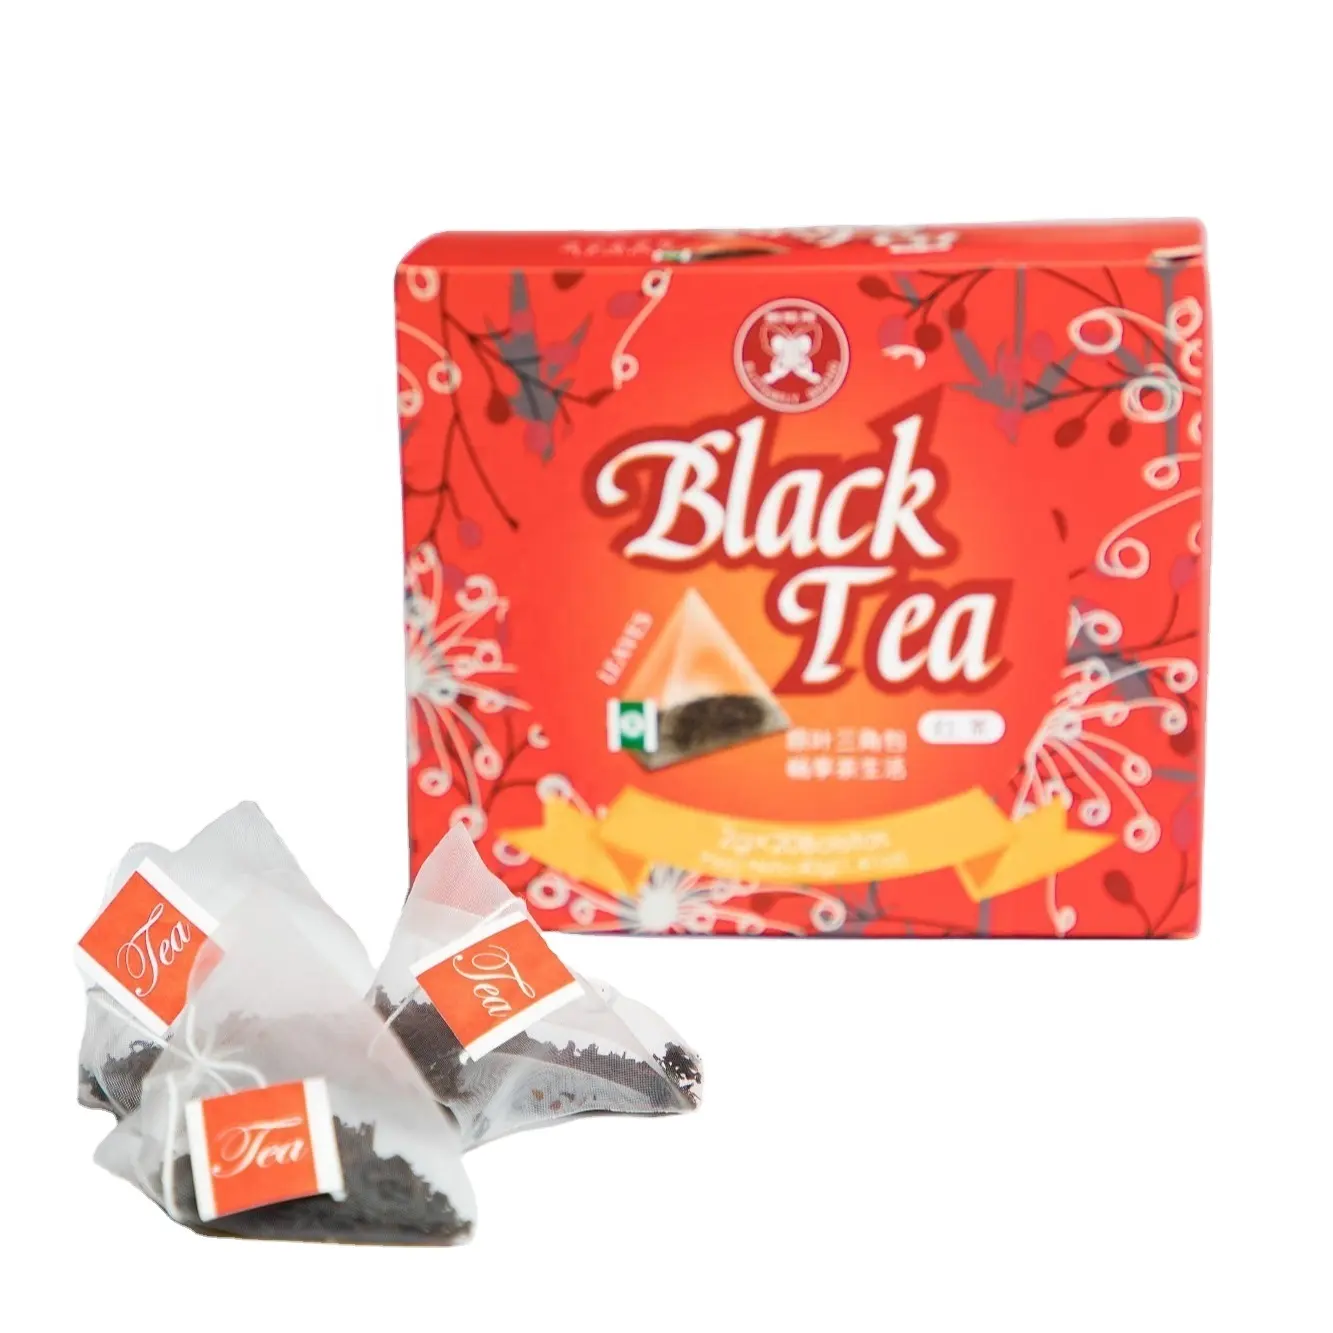 Fc08 kim tự tháp teabag giá nhà máy bán buôn thương lượng 40G CHA túi trà BT056 Trung Quốc Trà đen